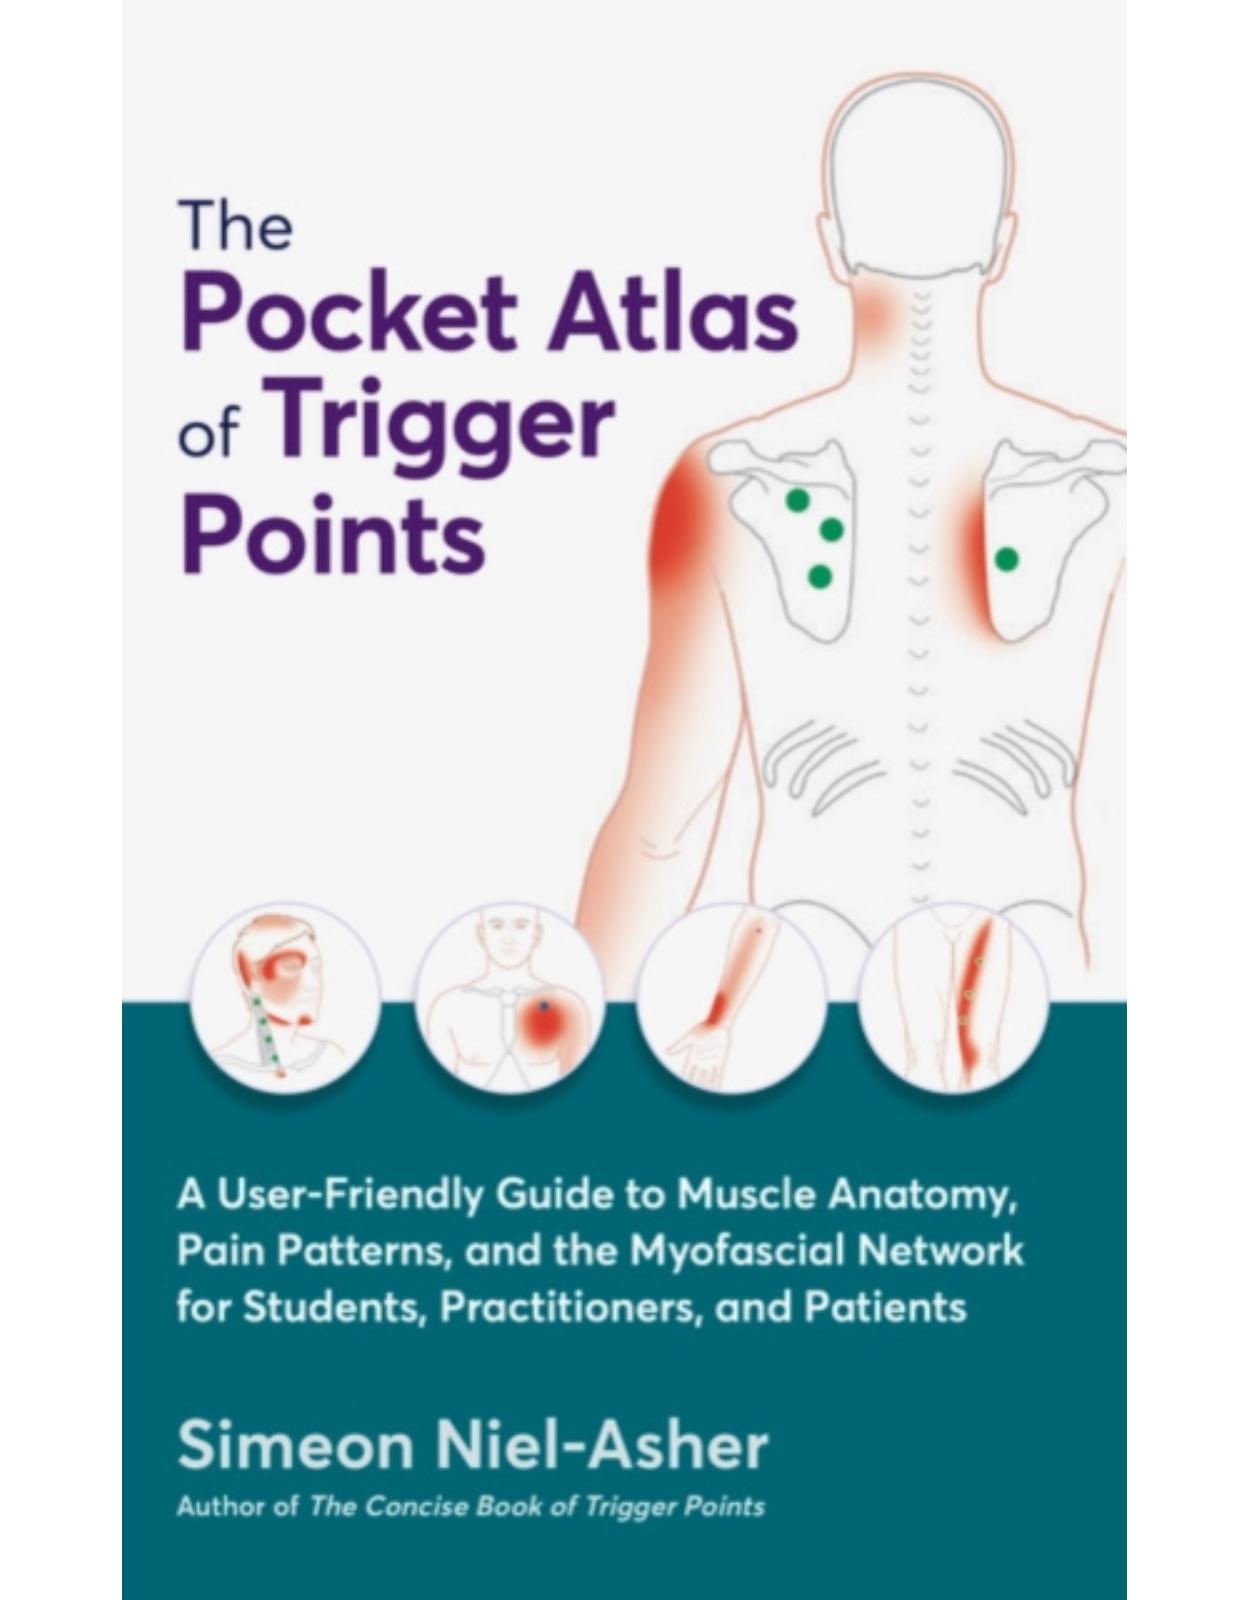 The Pocket Atlas of Trigger Points: Pocket Atlas